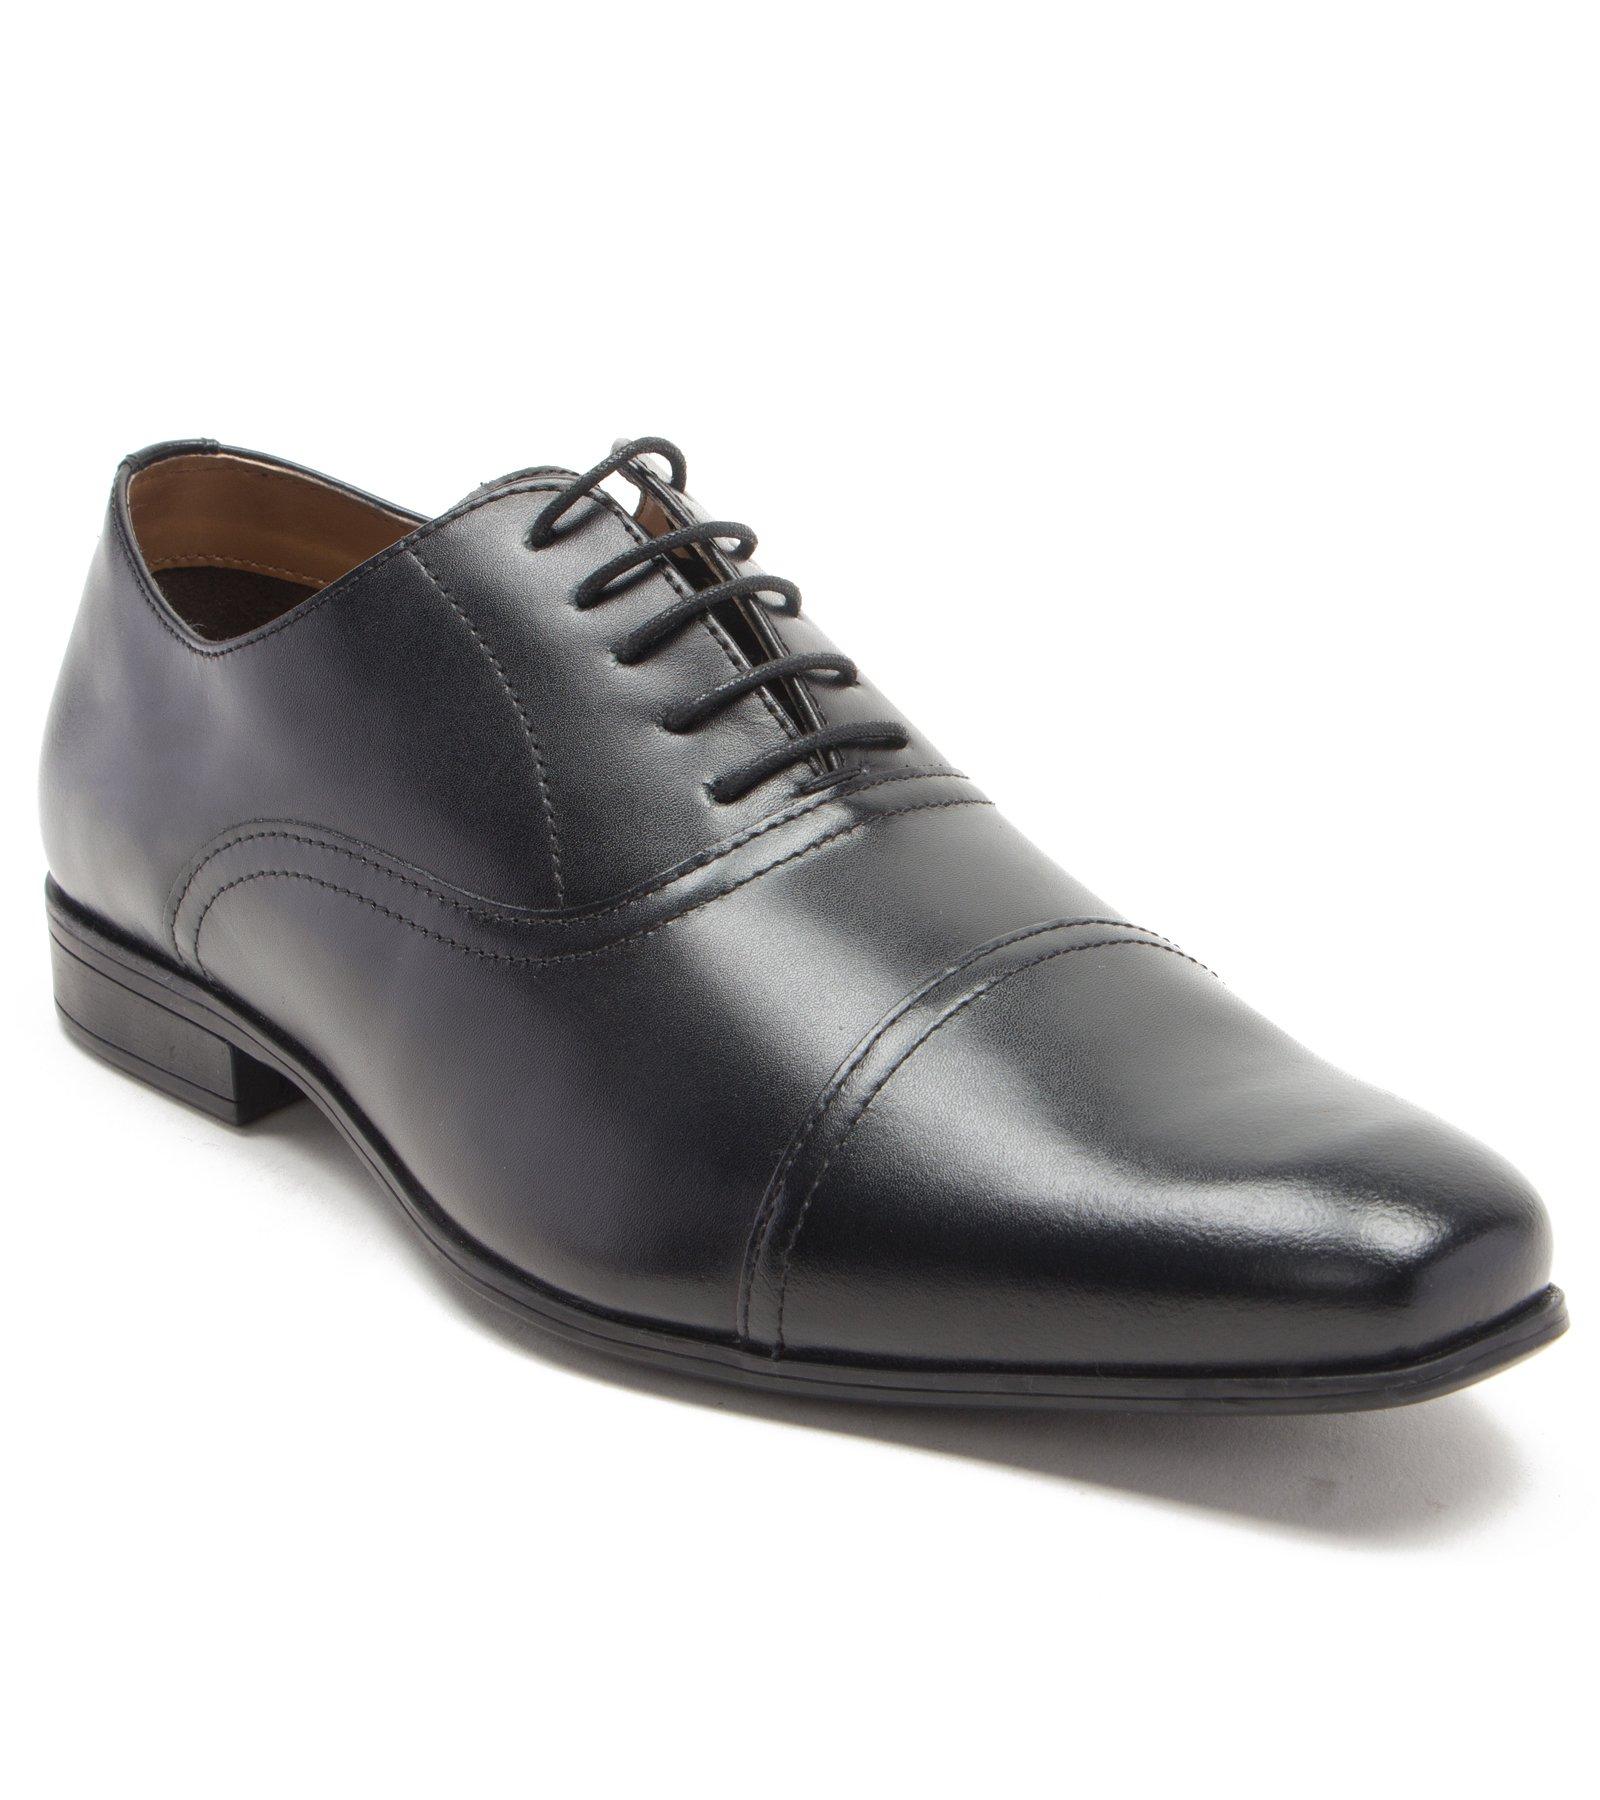 Классические оксфорды Mellor на шнуровке Официальная обувь Thomas Crick, черный mellor